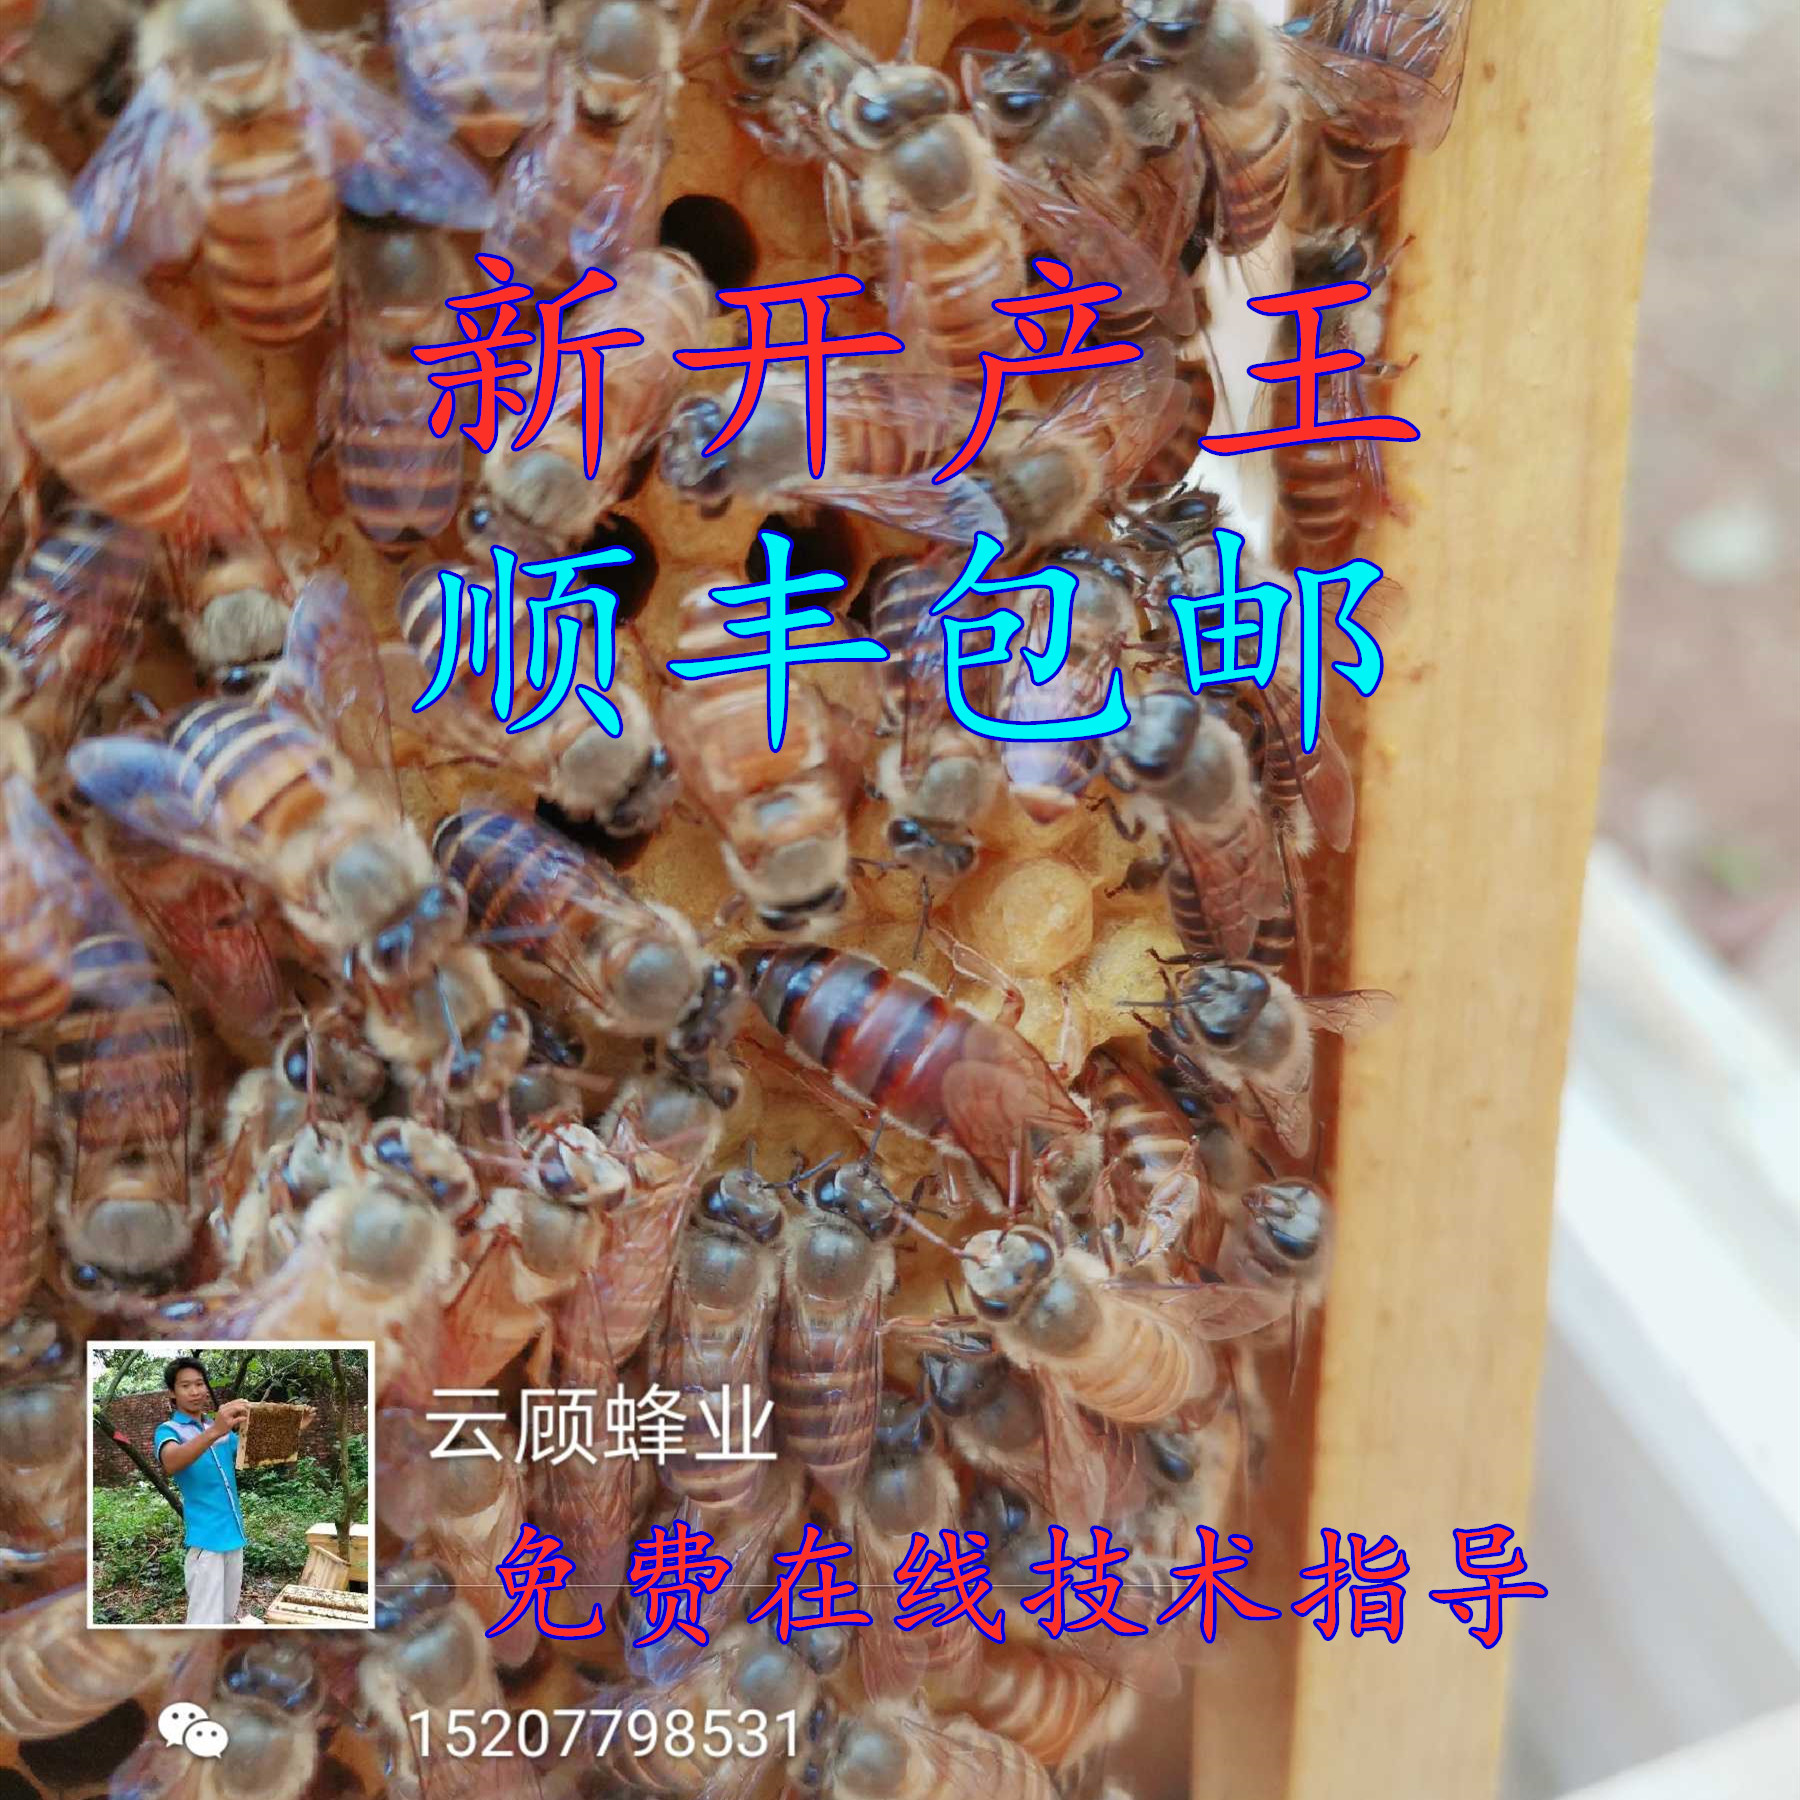 人工蜂巢中的蜂王高清摄影大图-千库网